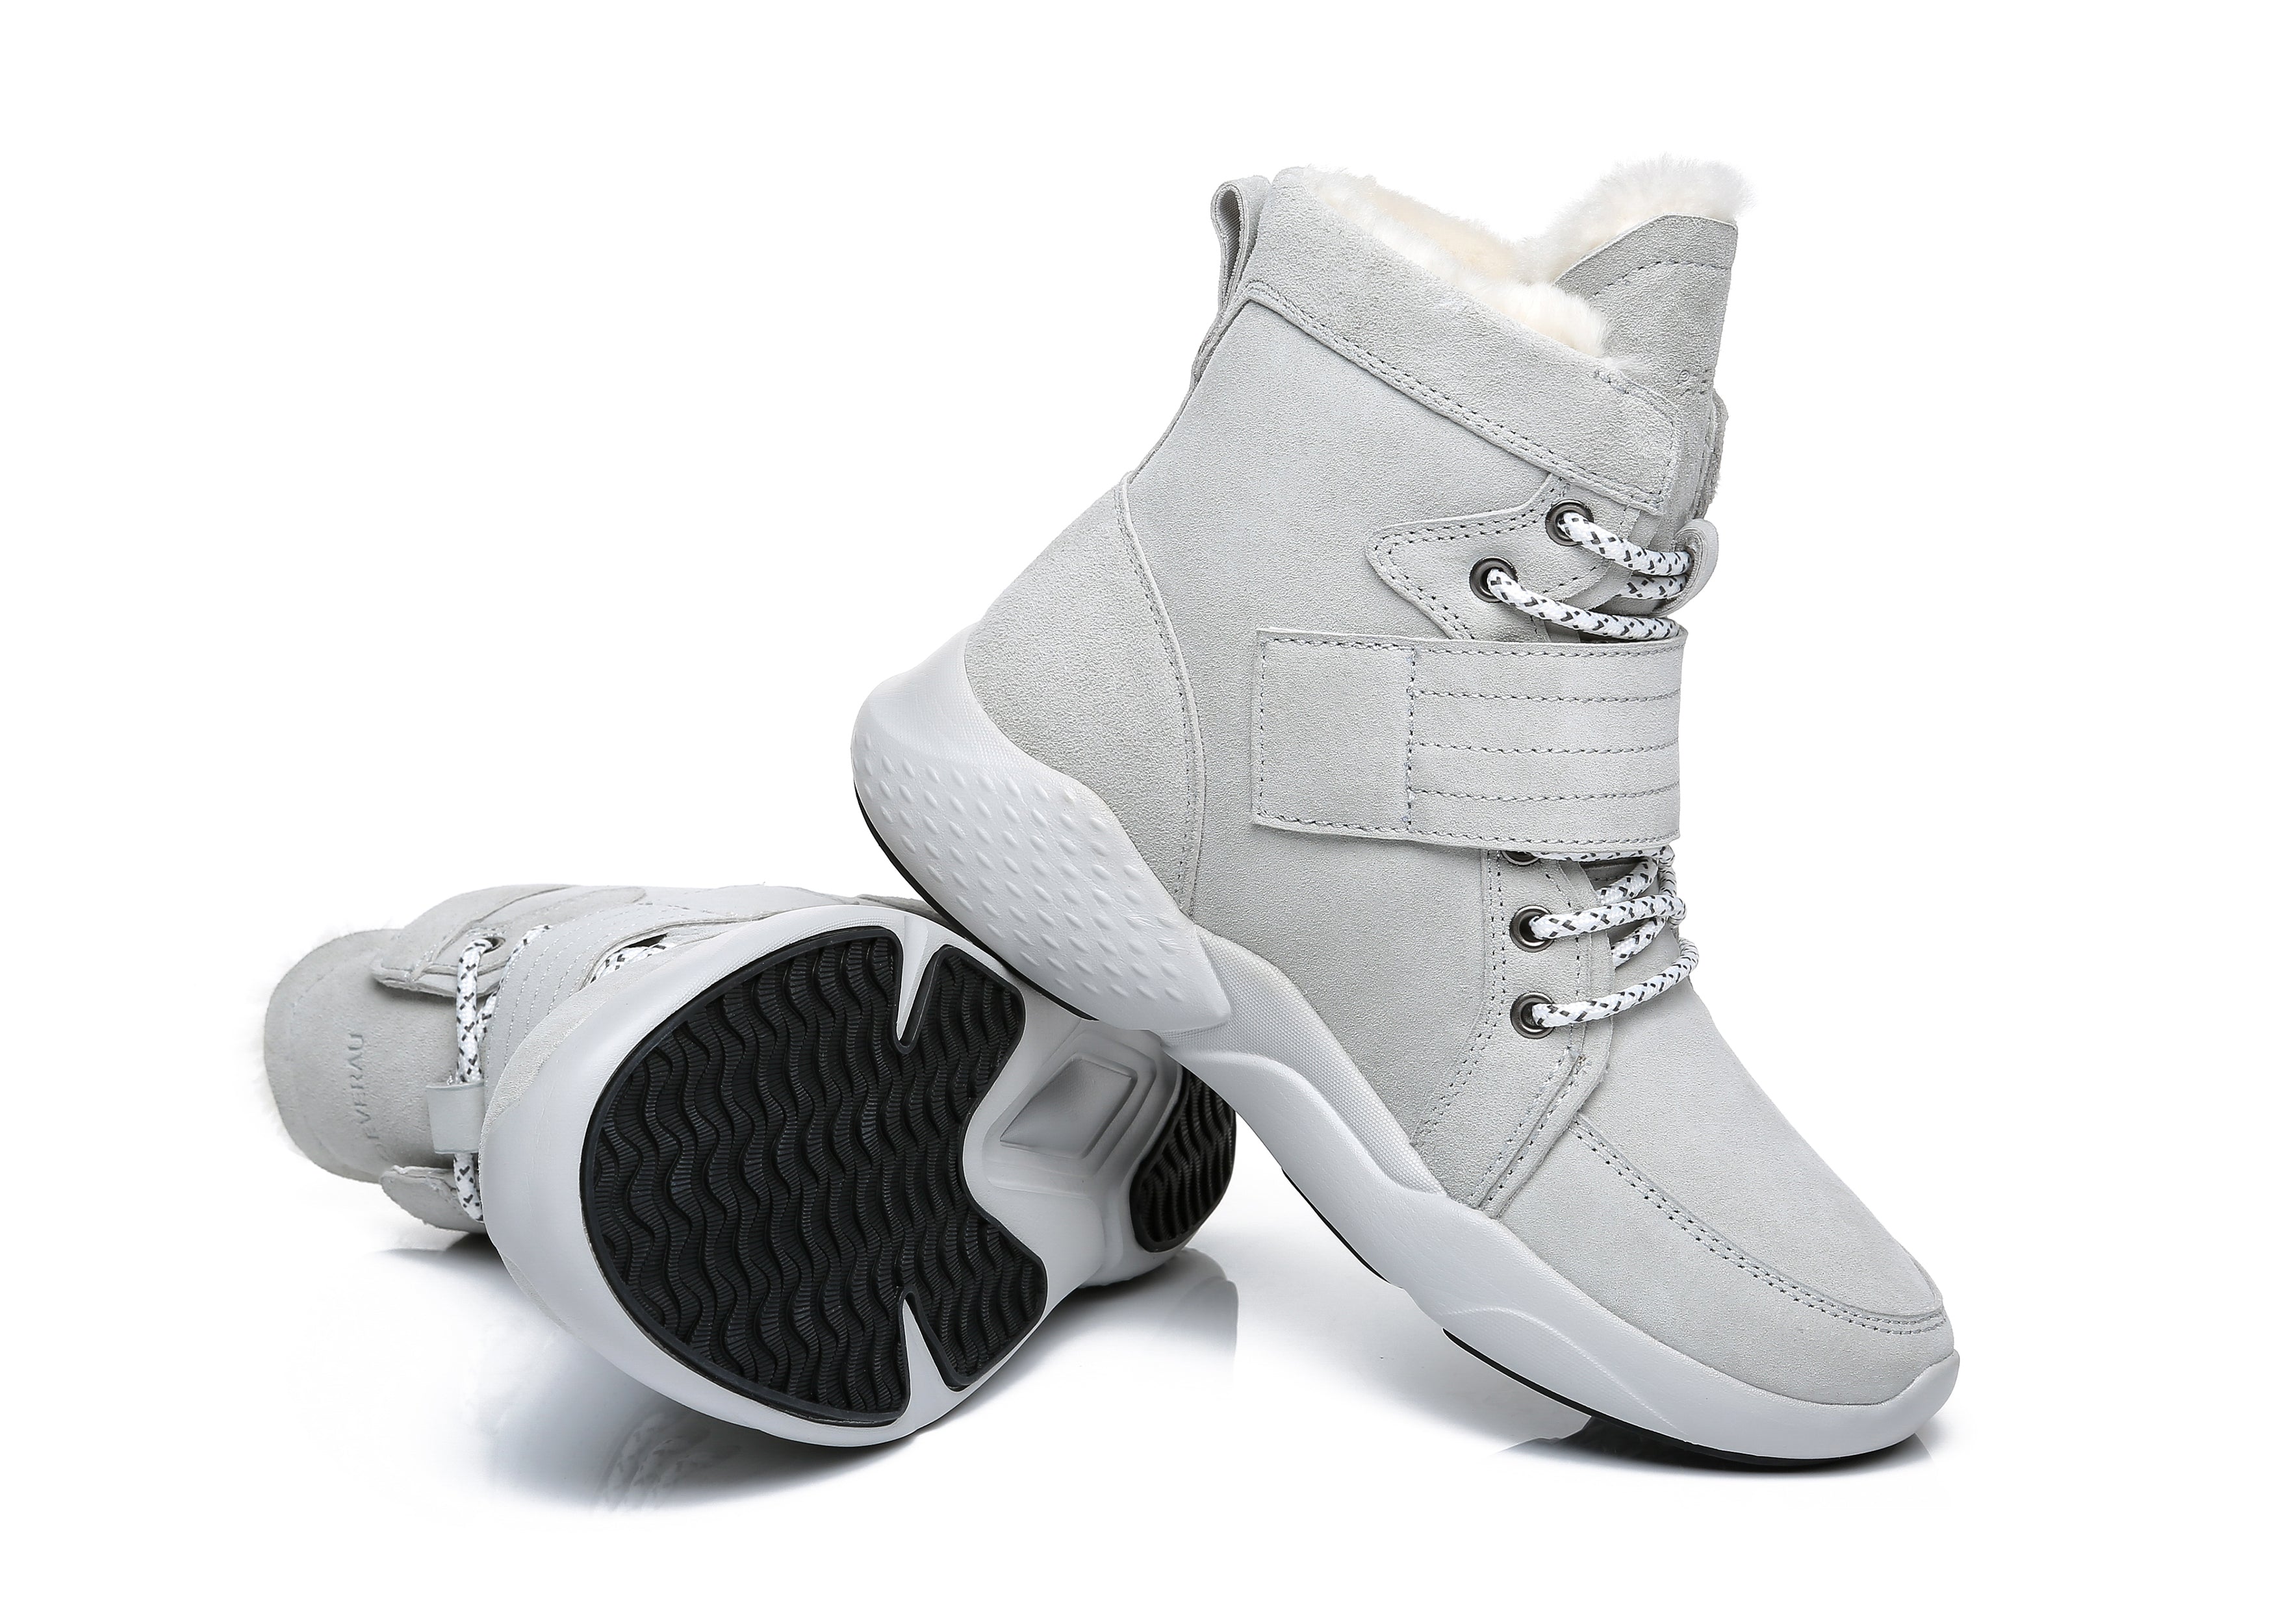 EVERAU® Ankle Chunky Sneakers Women City Walker - Sneaker - Grey - AU Ladies 4 / AU Men 2 / EU 35 - Uggoutlet